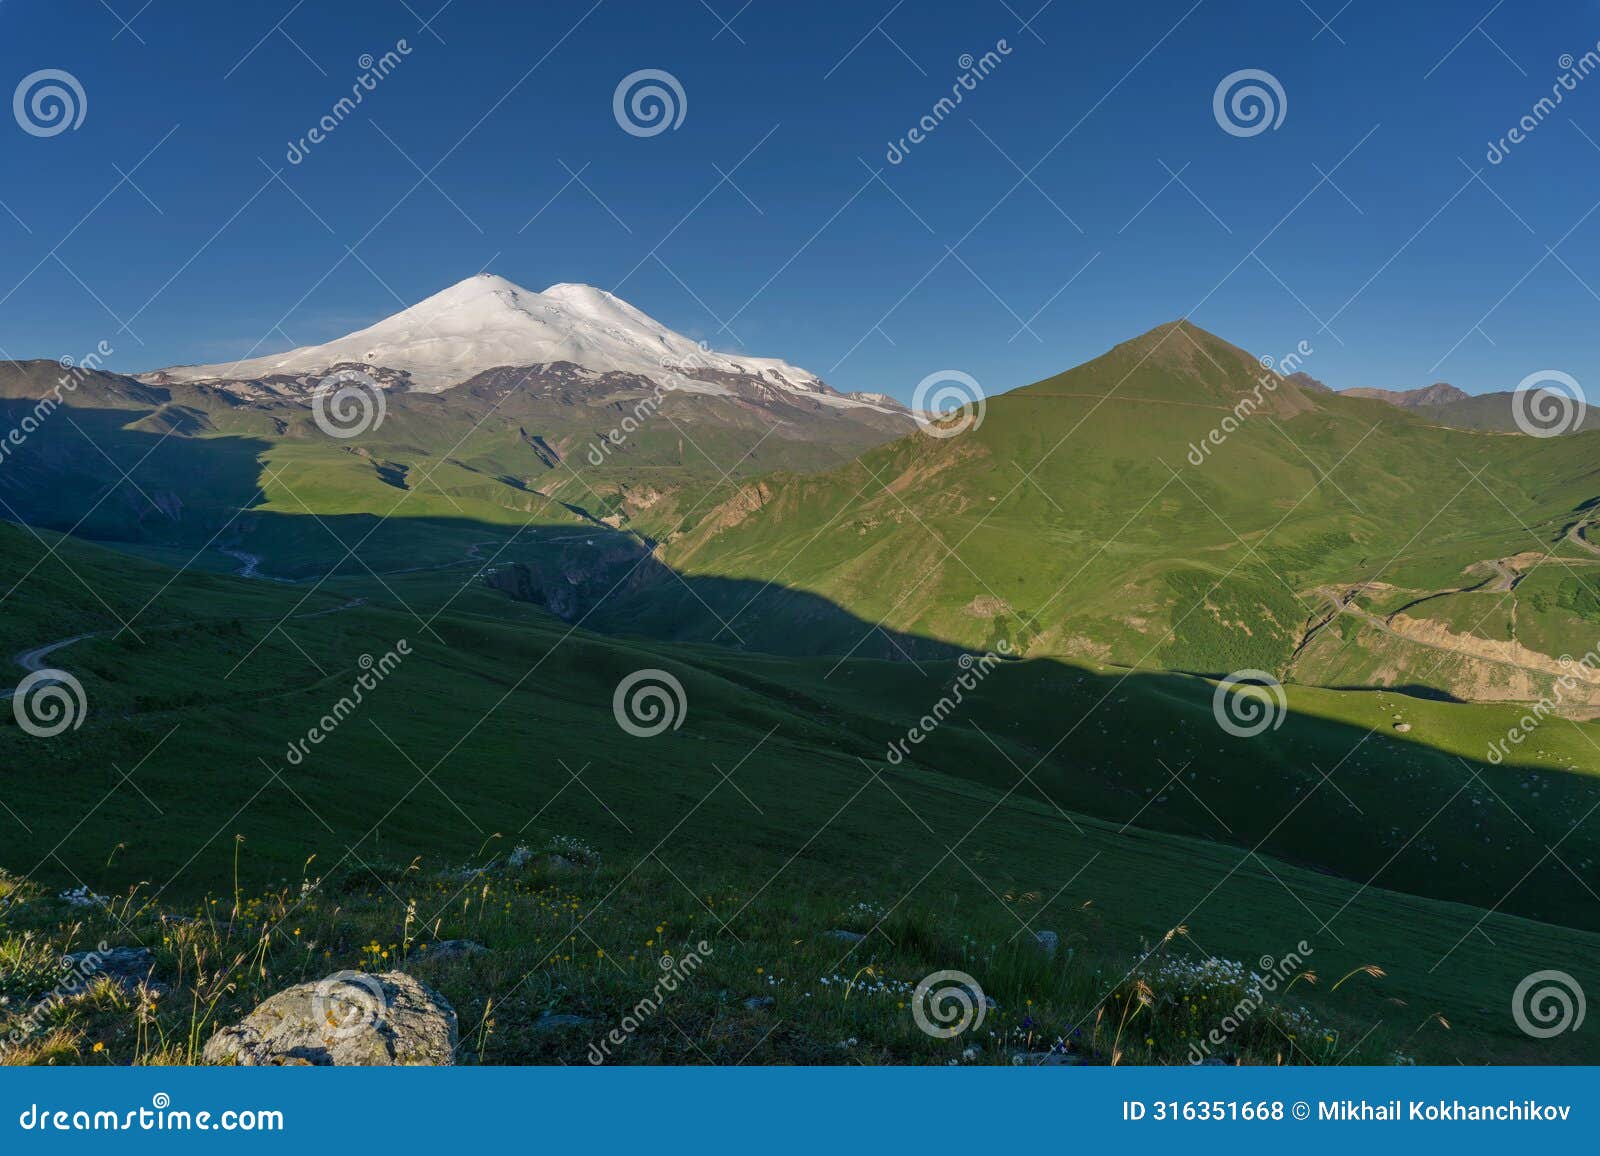 mount elbrus at sunrise caucasus mountains